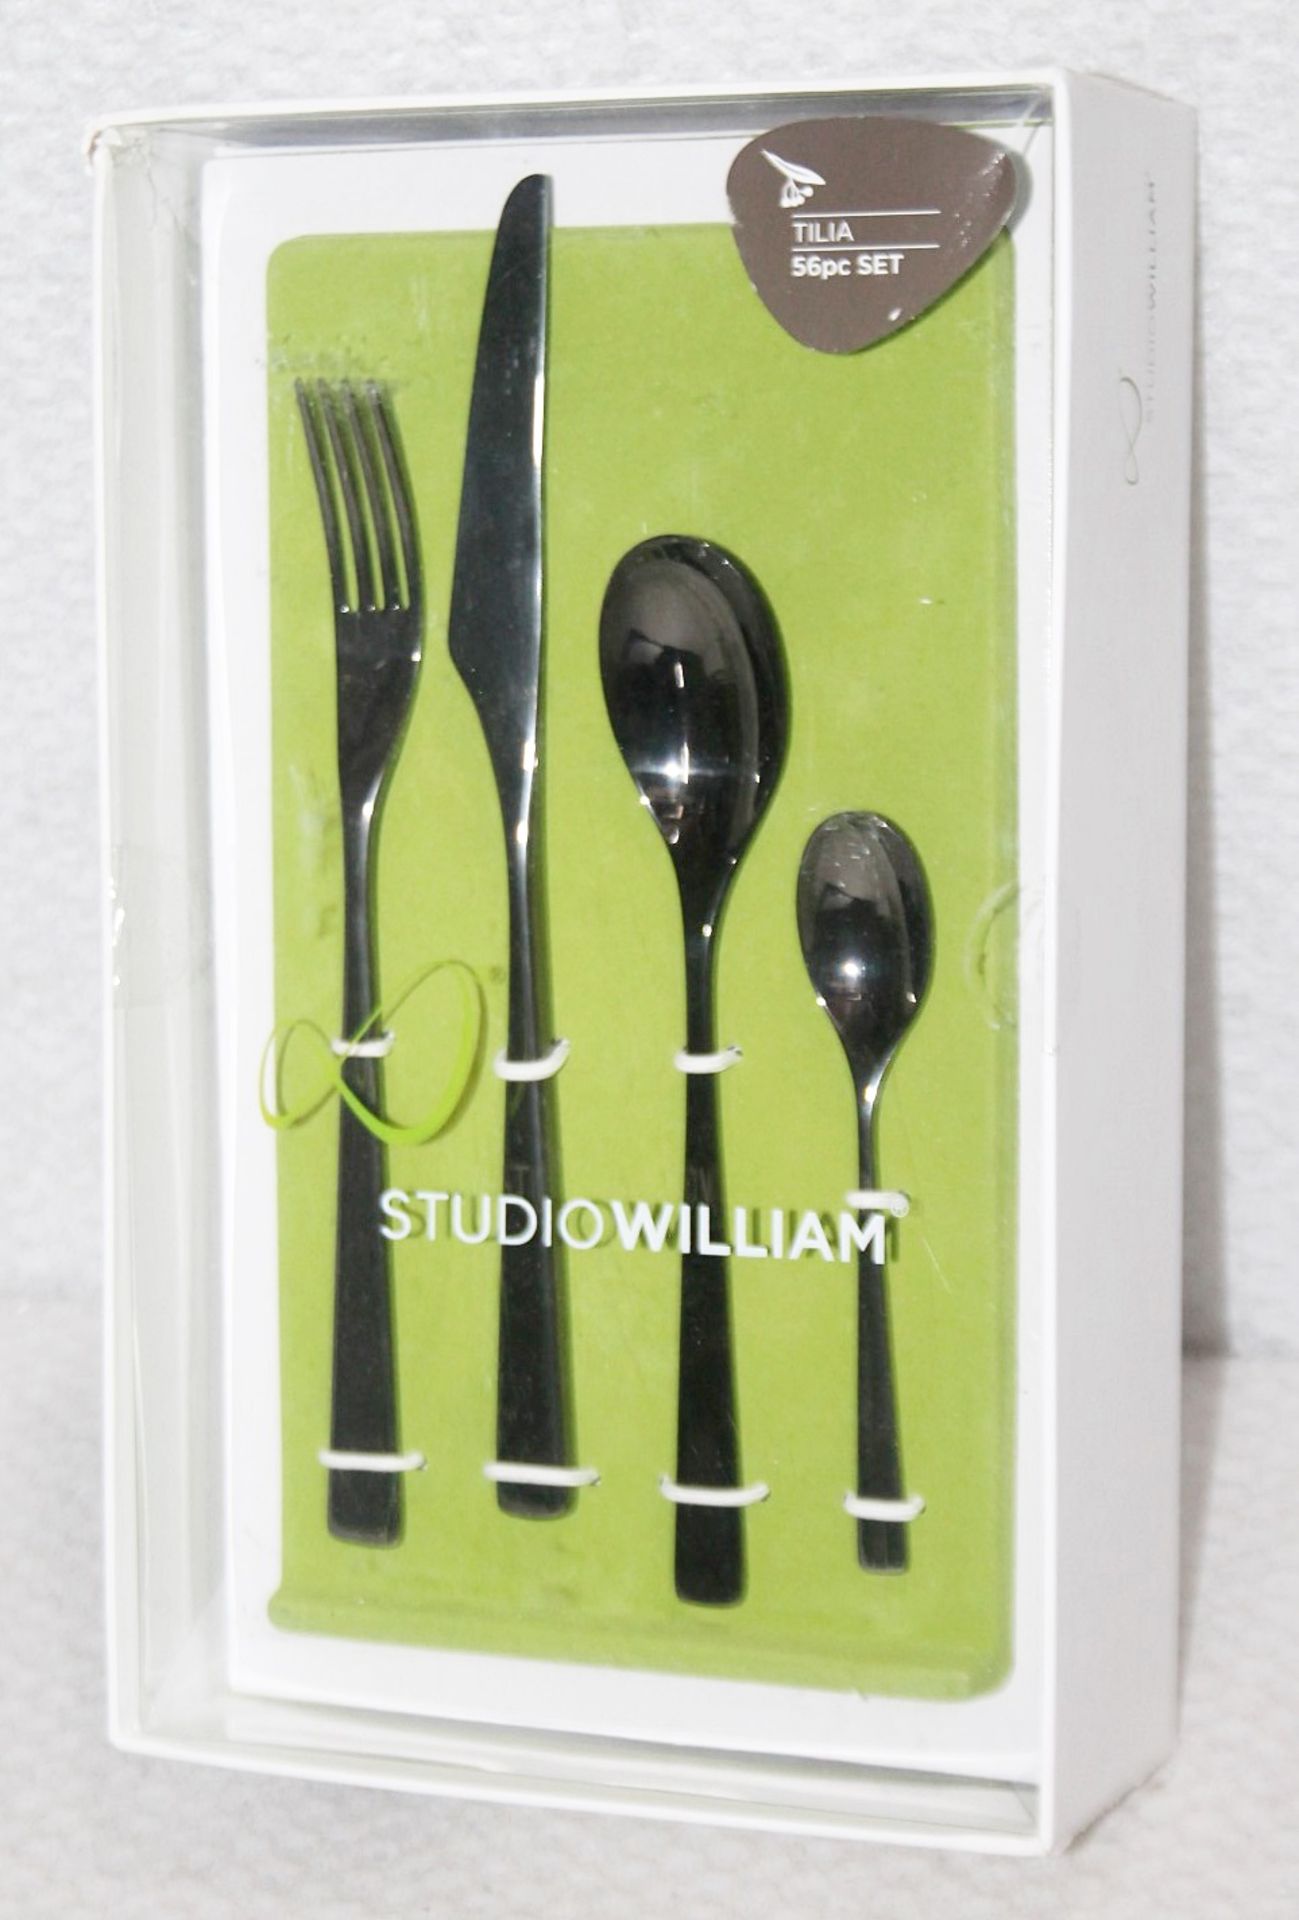 1 x STUDIO WILLIAM 'Tilia Obsidian' 56-Piece Cutlery Set - Original Price £930.00 - Unused Boxed - Image 4 of 11